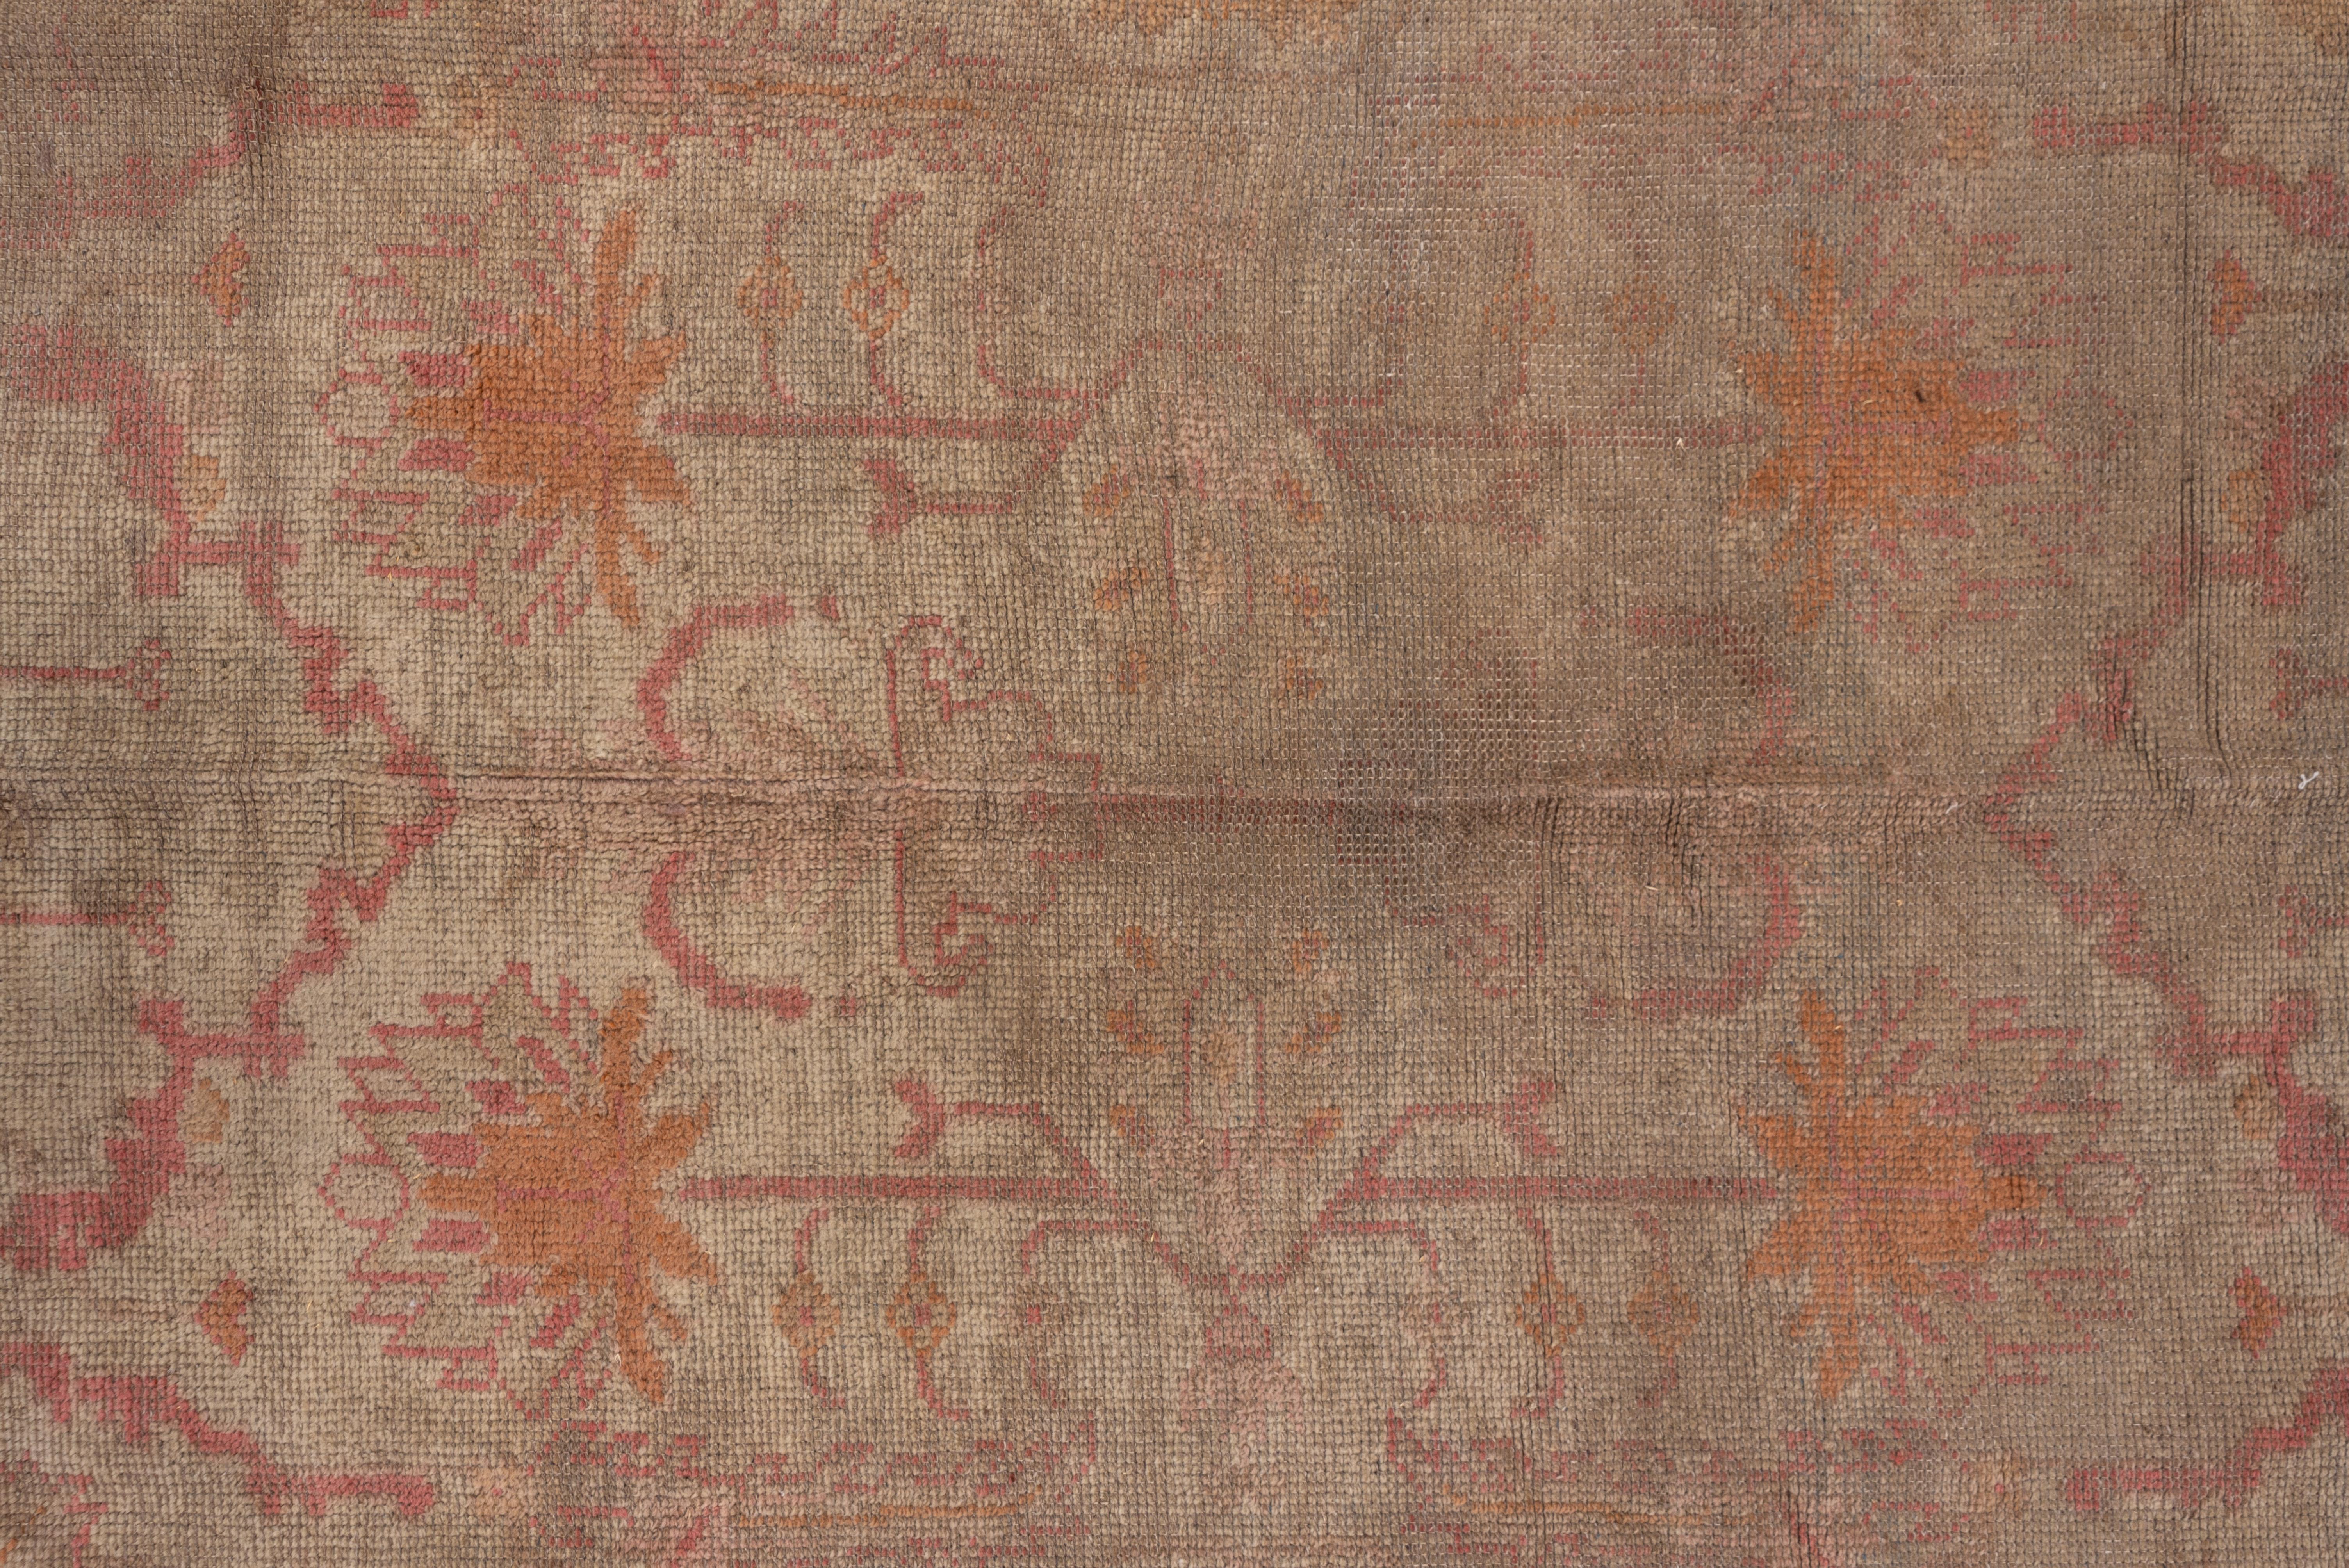 Mid-20th Century Antique Turkish Oushak Carpet, Pink Tones, Soft Palette, Soft Tones For Sale